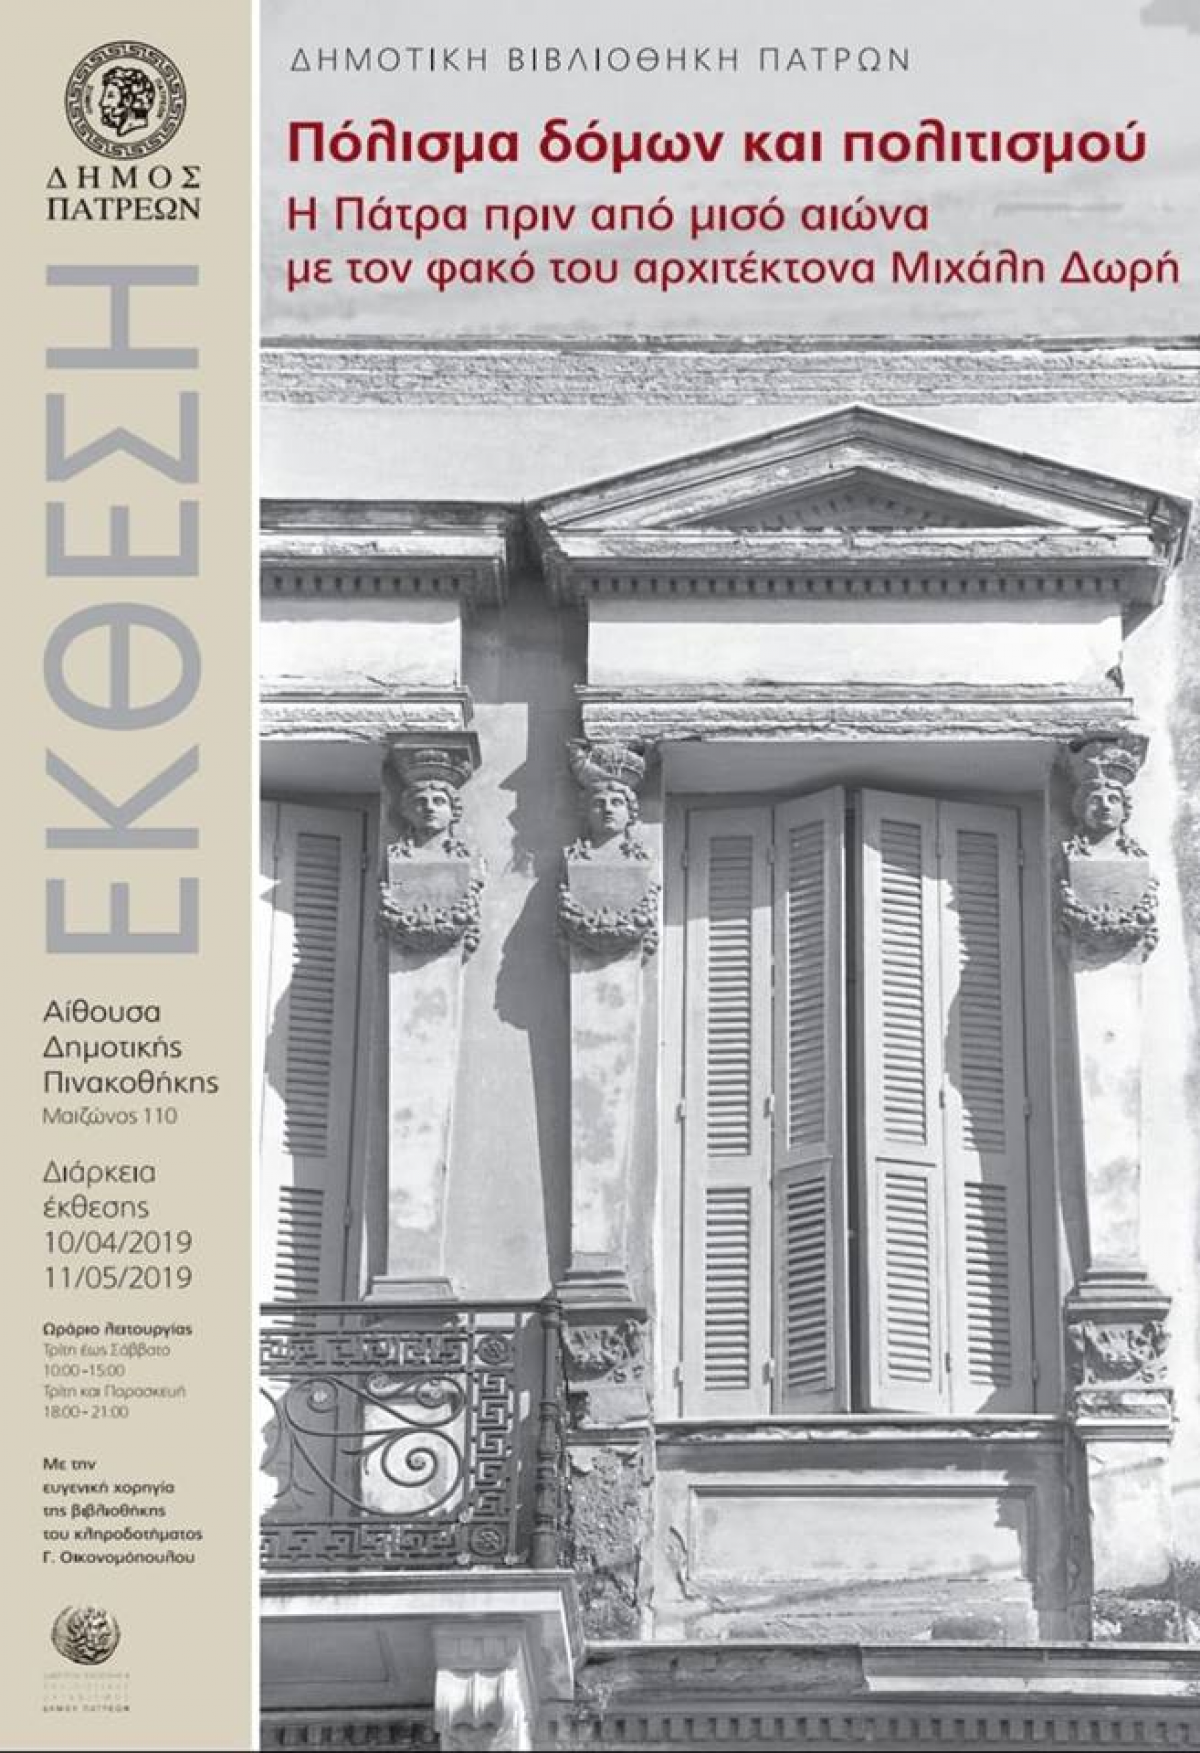 «Πόλισμα δόμων & πολιτισμού – Η Πάτρα πριν μισό αιώνα με τον φακό του αρχιτέκτονα Μιχ. Δωρή»